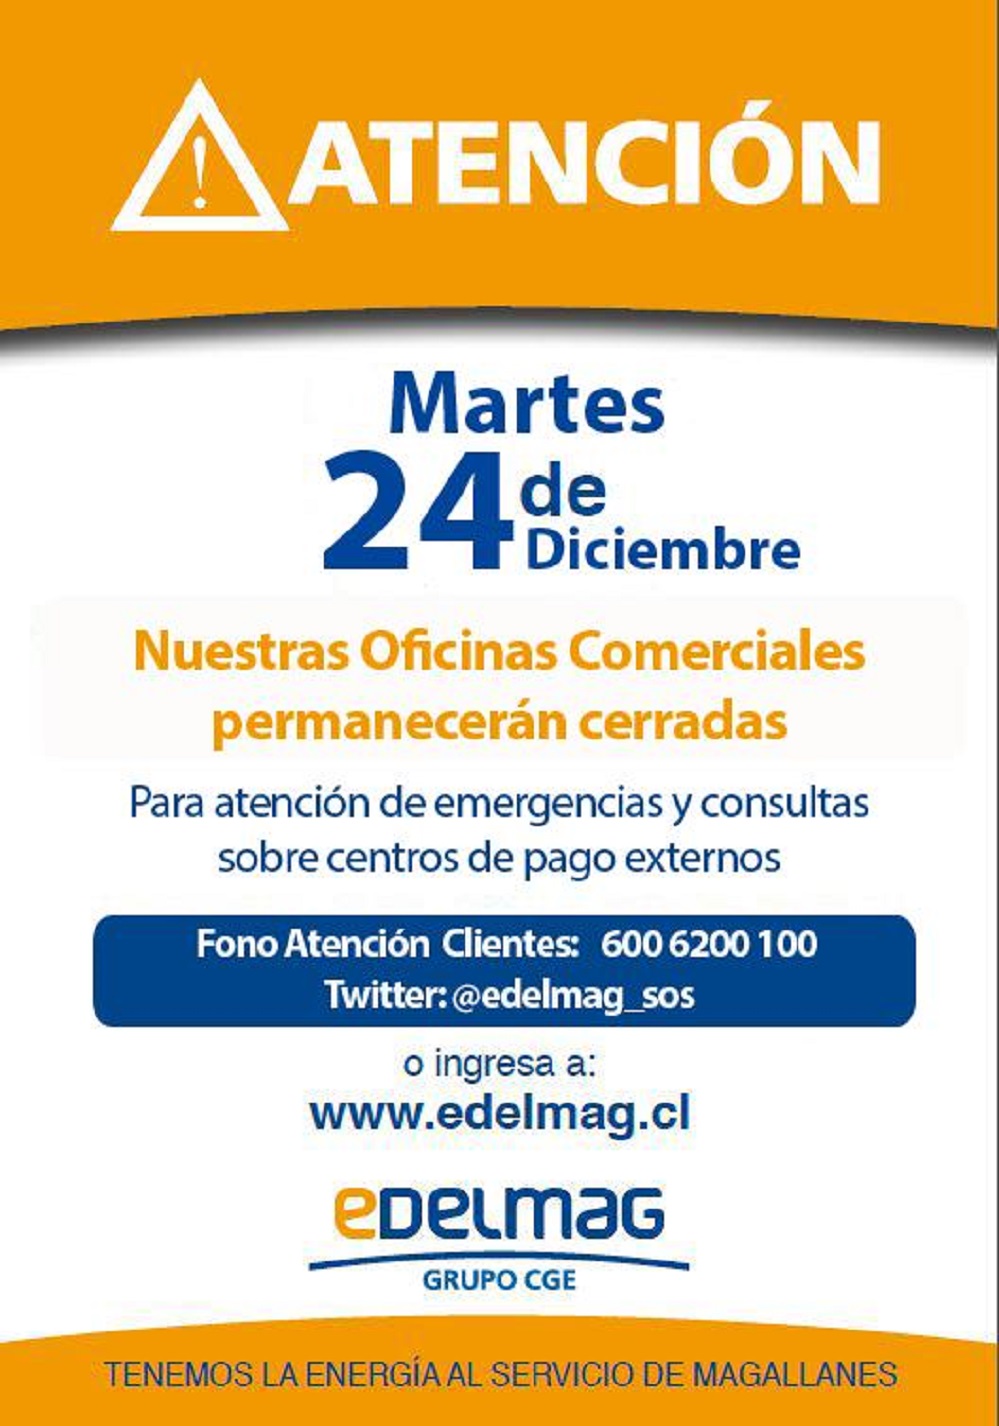 EDELMAG informa cierre de oficinas para el martes 24 de diciembre